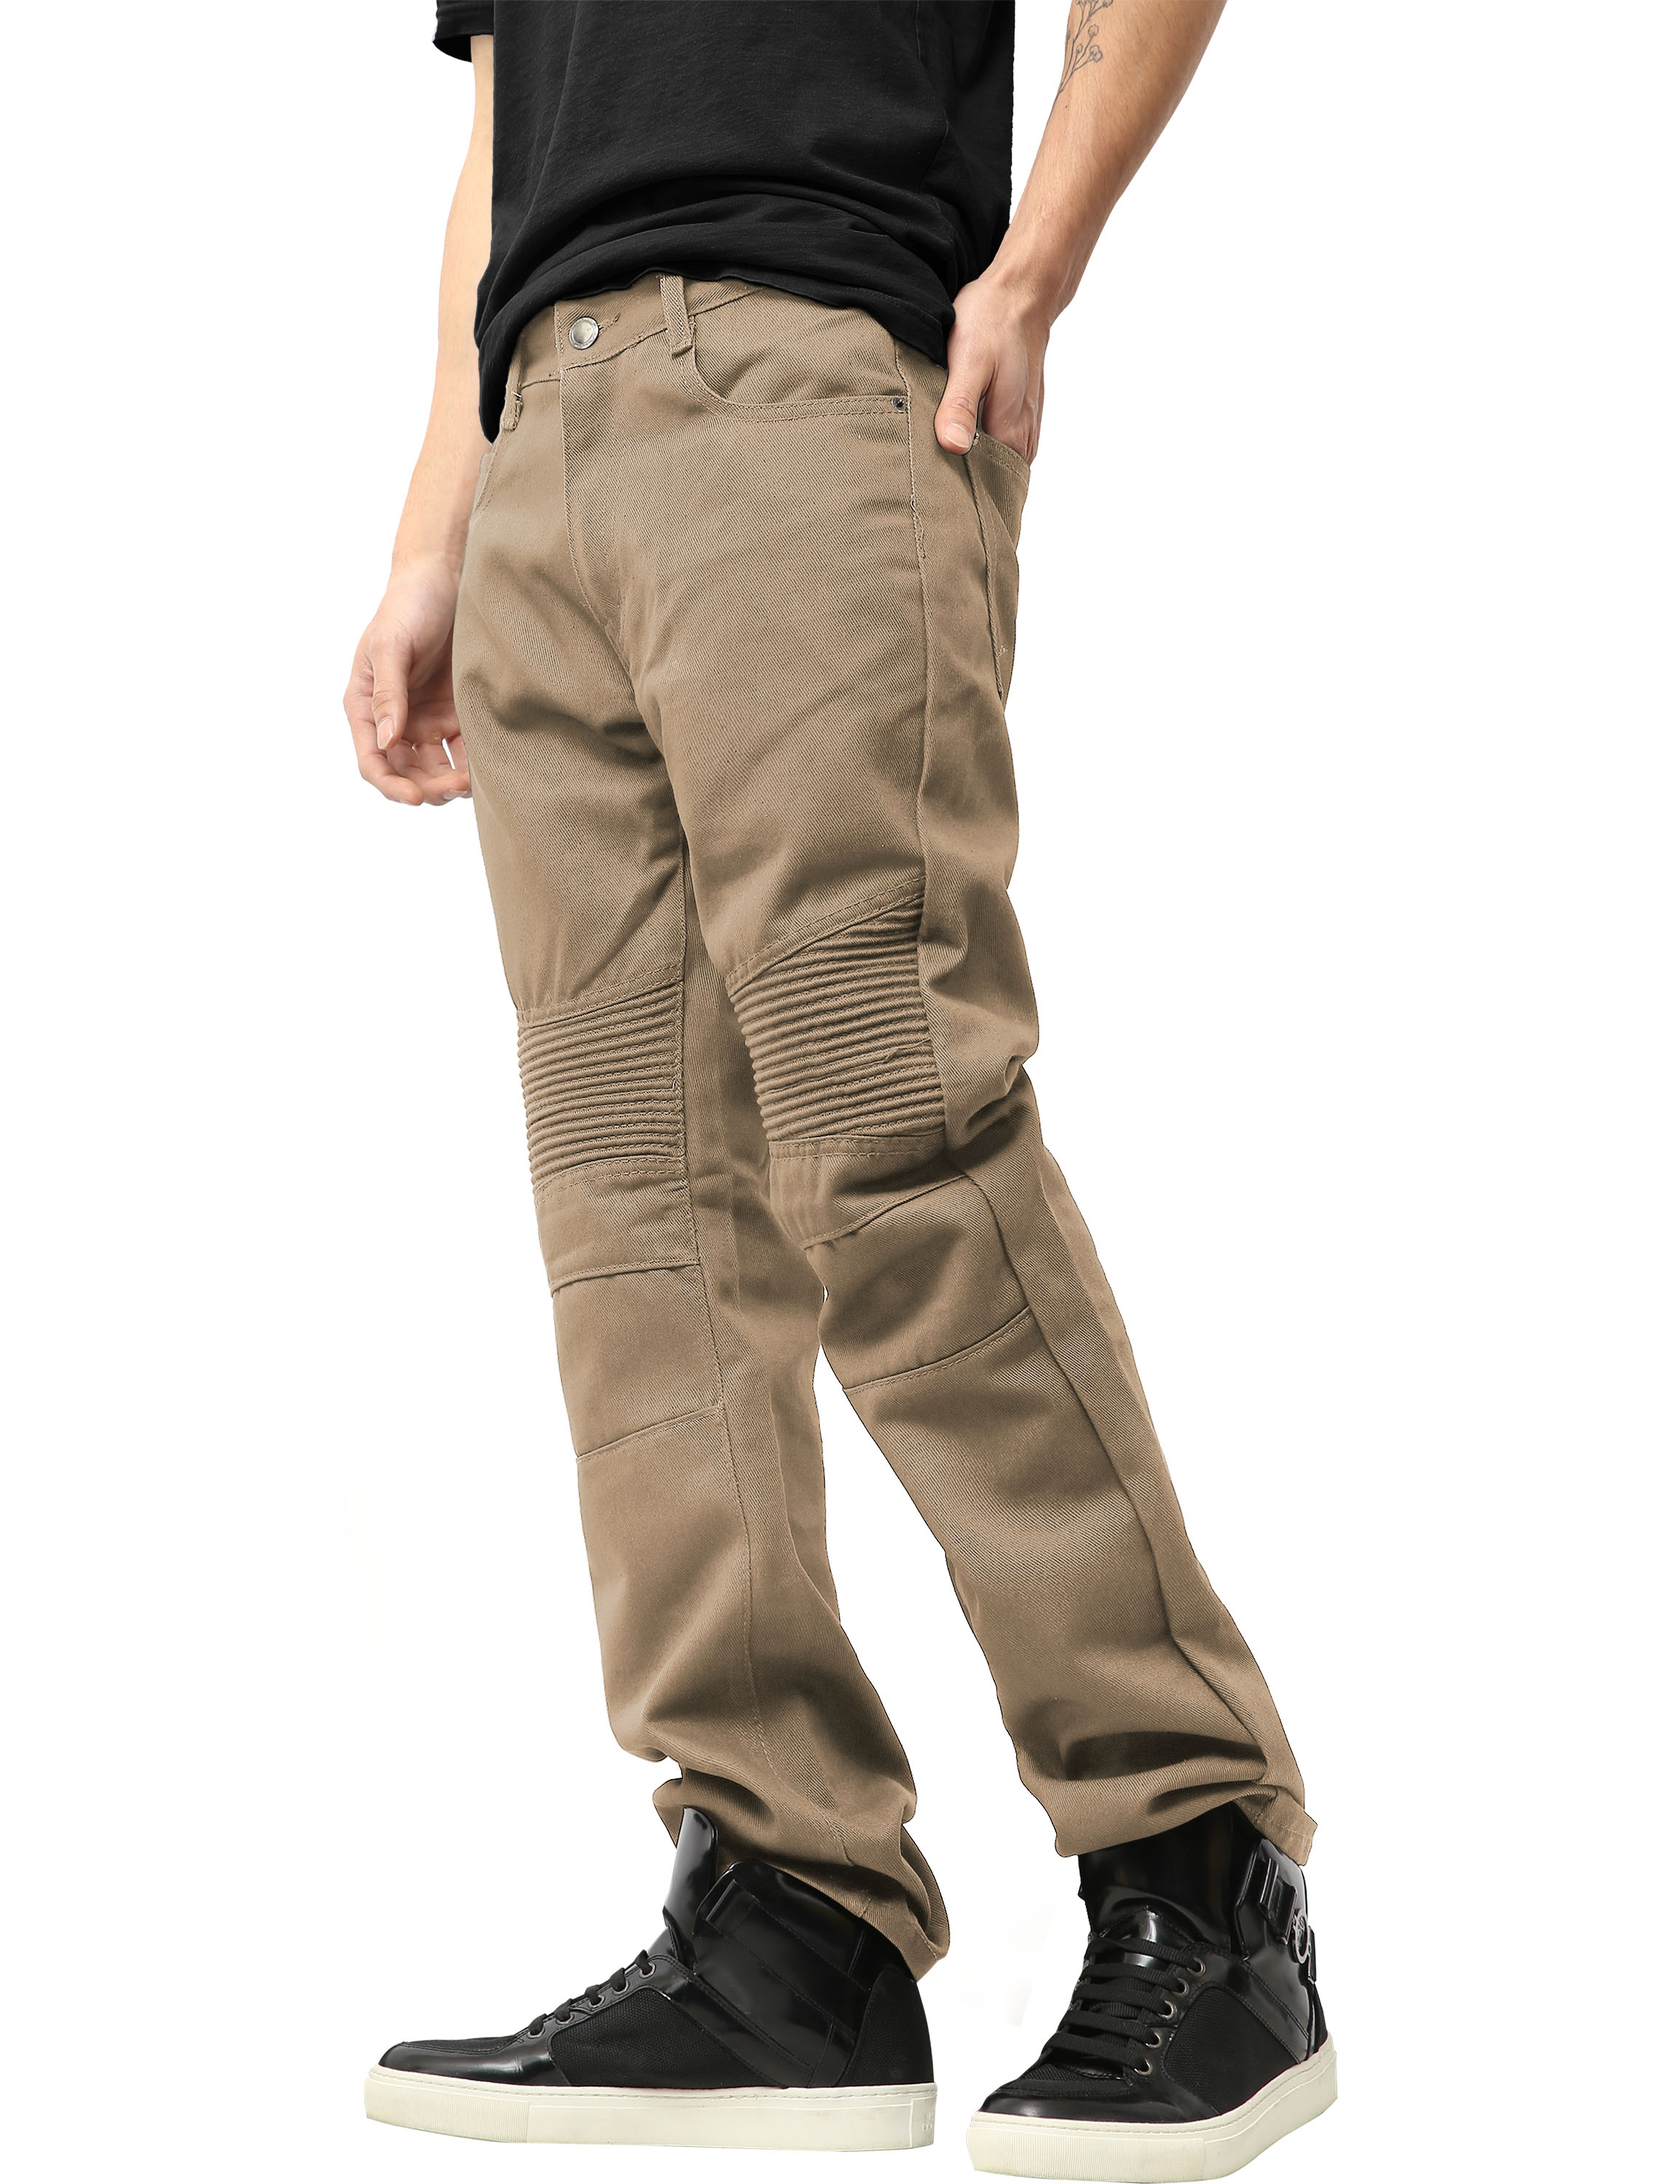 Ma Croix Mens Biker Jeans Slim Straight Fit Denim Distressed Zipper Pants - image 2 of 7